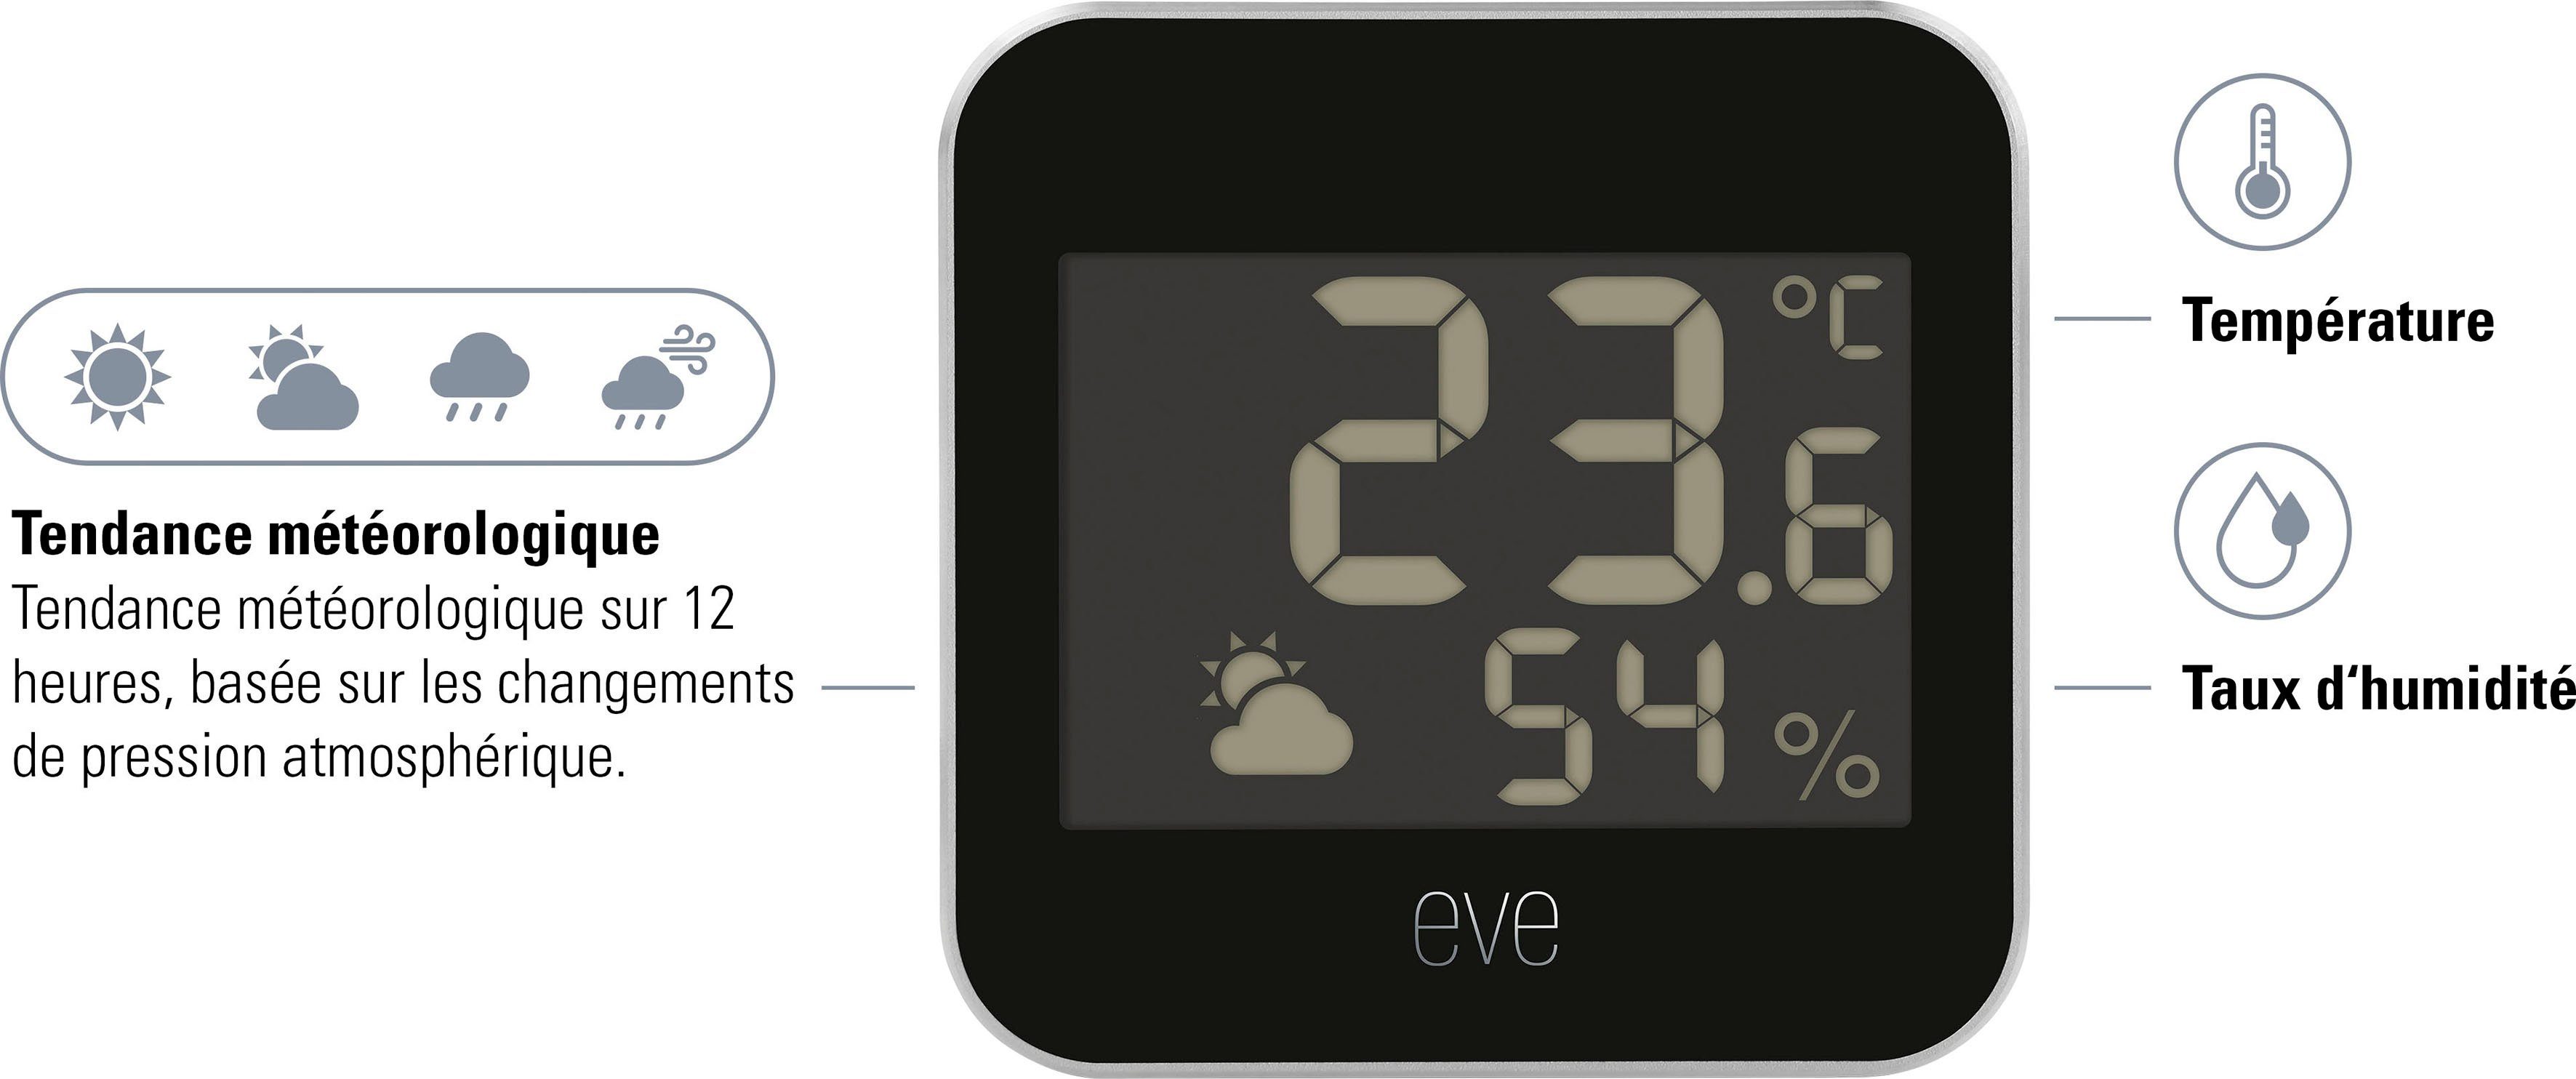 EVE Sensor Weather (1-St) (HomeKit)